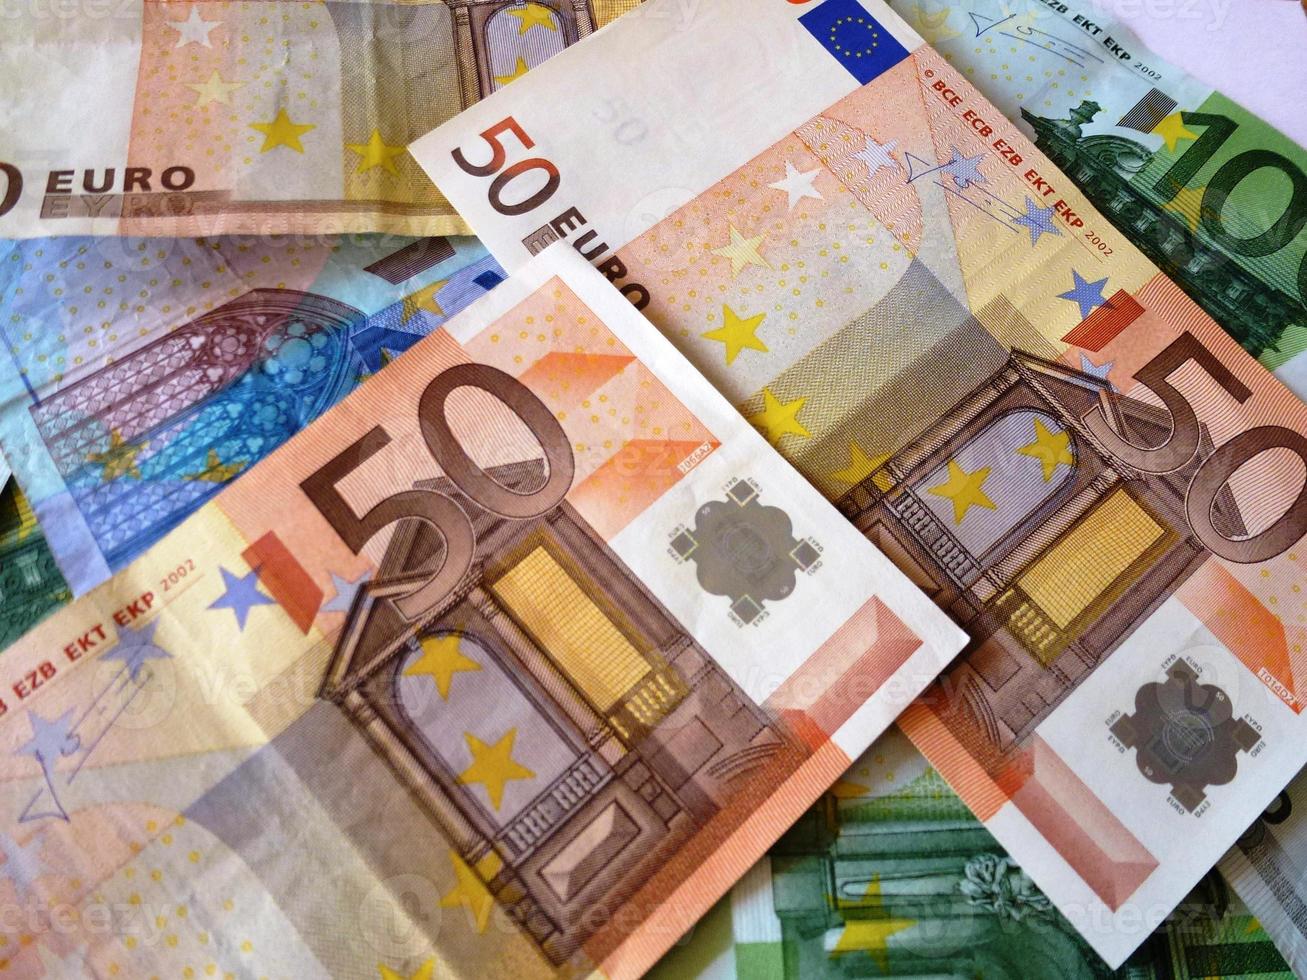 banconote in euro foto